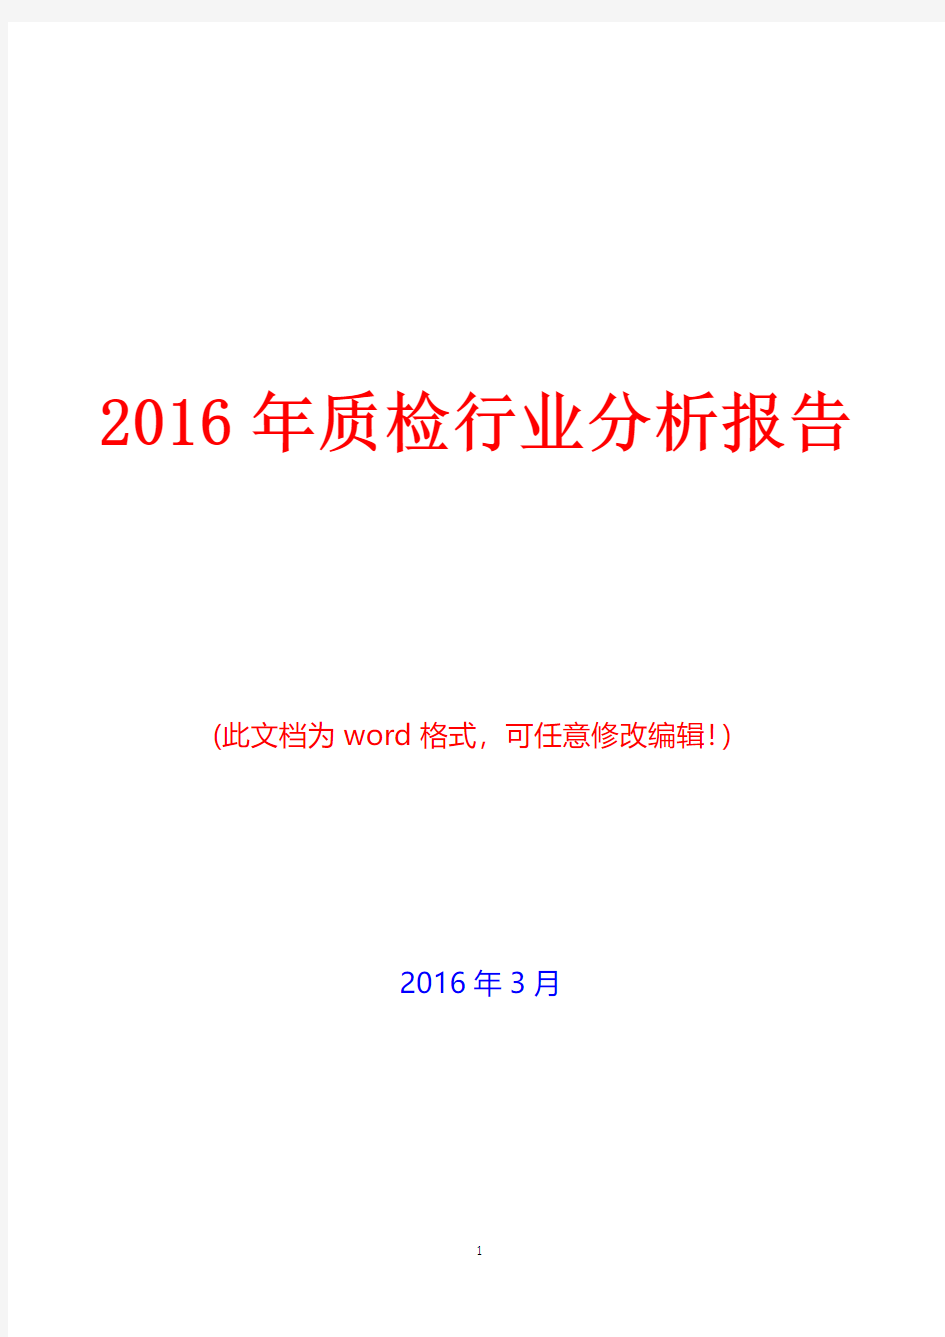 2016年中国质检行业分析报告(完美版)